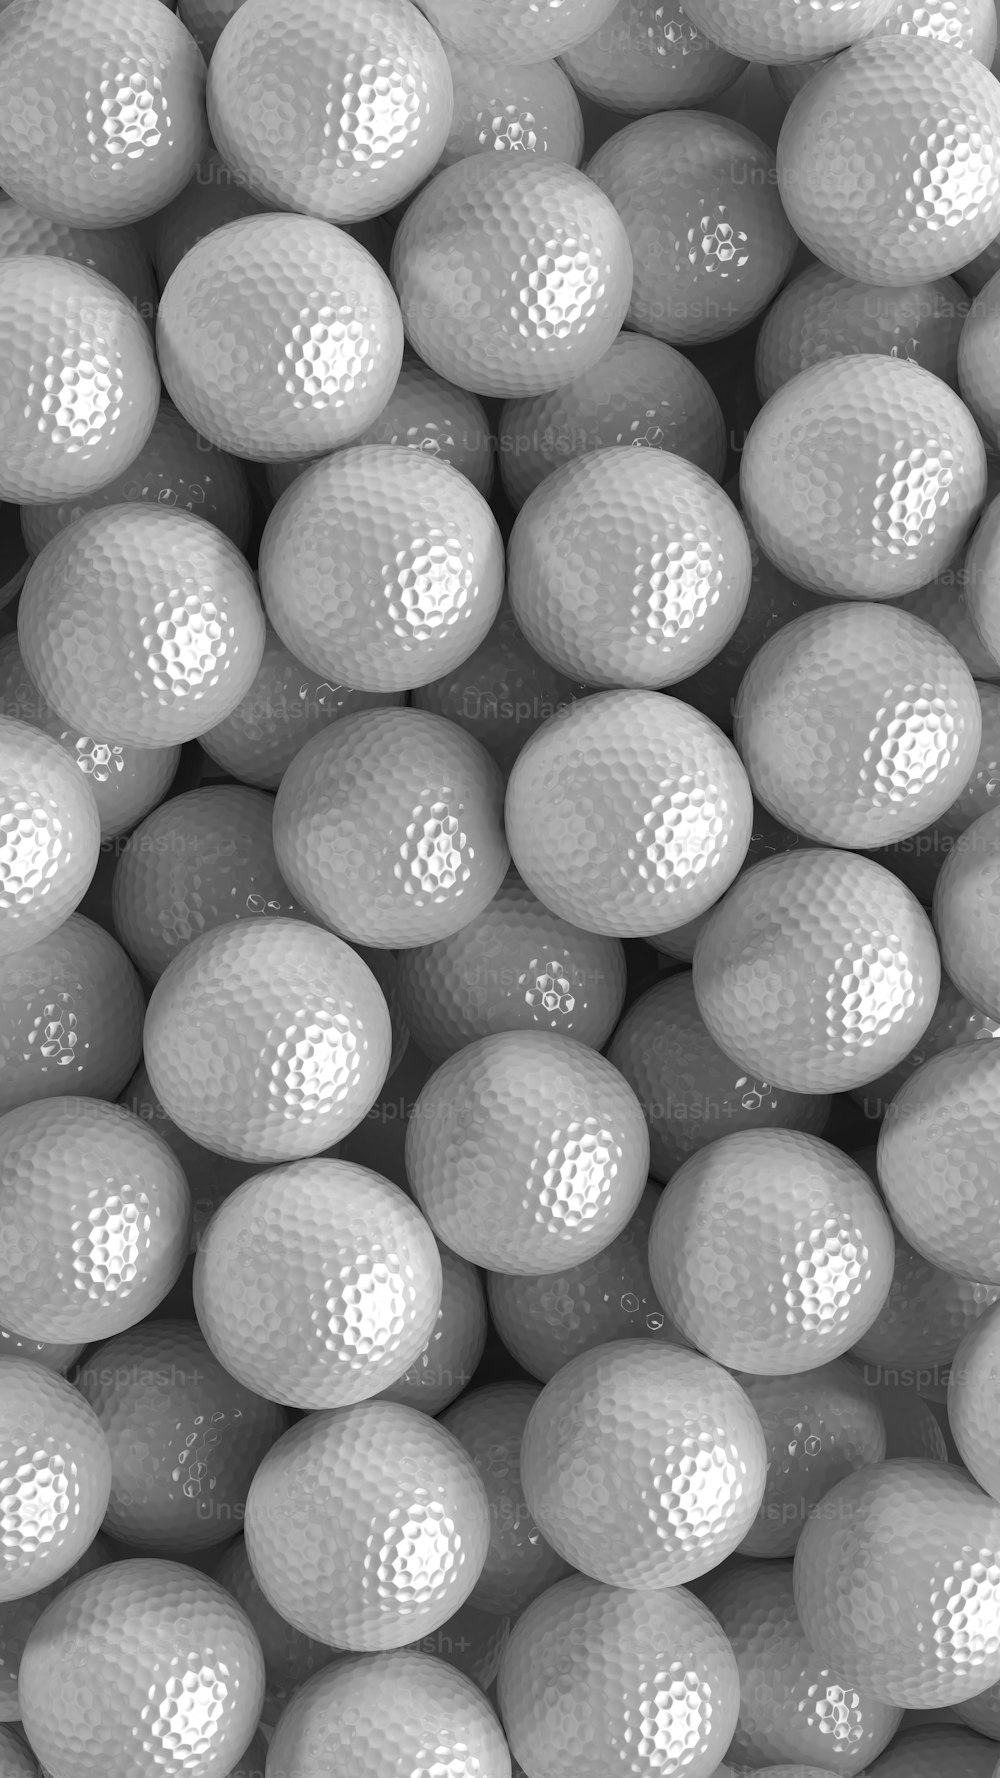 une pile de balles de golf blanches assises les unes sur les autres